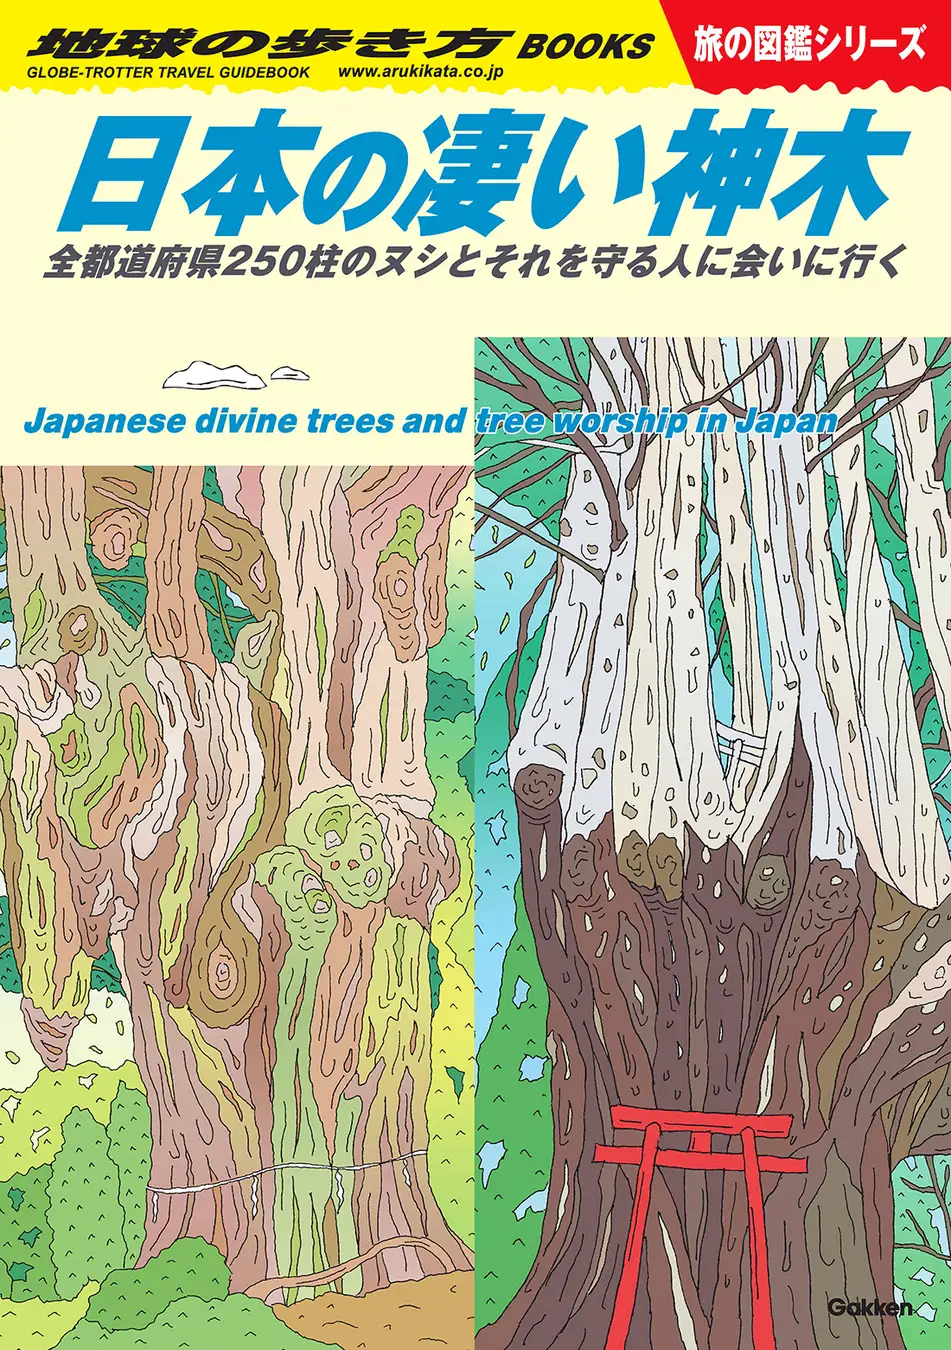 あなたの故郷の凄い木＝“神木”を知っていますか？ 地球の歩き方、旅の図鑑シリーズ『日本の凄い神木』が発売！ 全都道府県の“ヌシ”がここにいます。